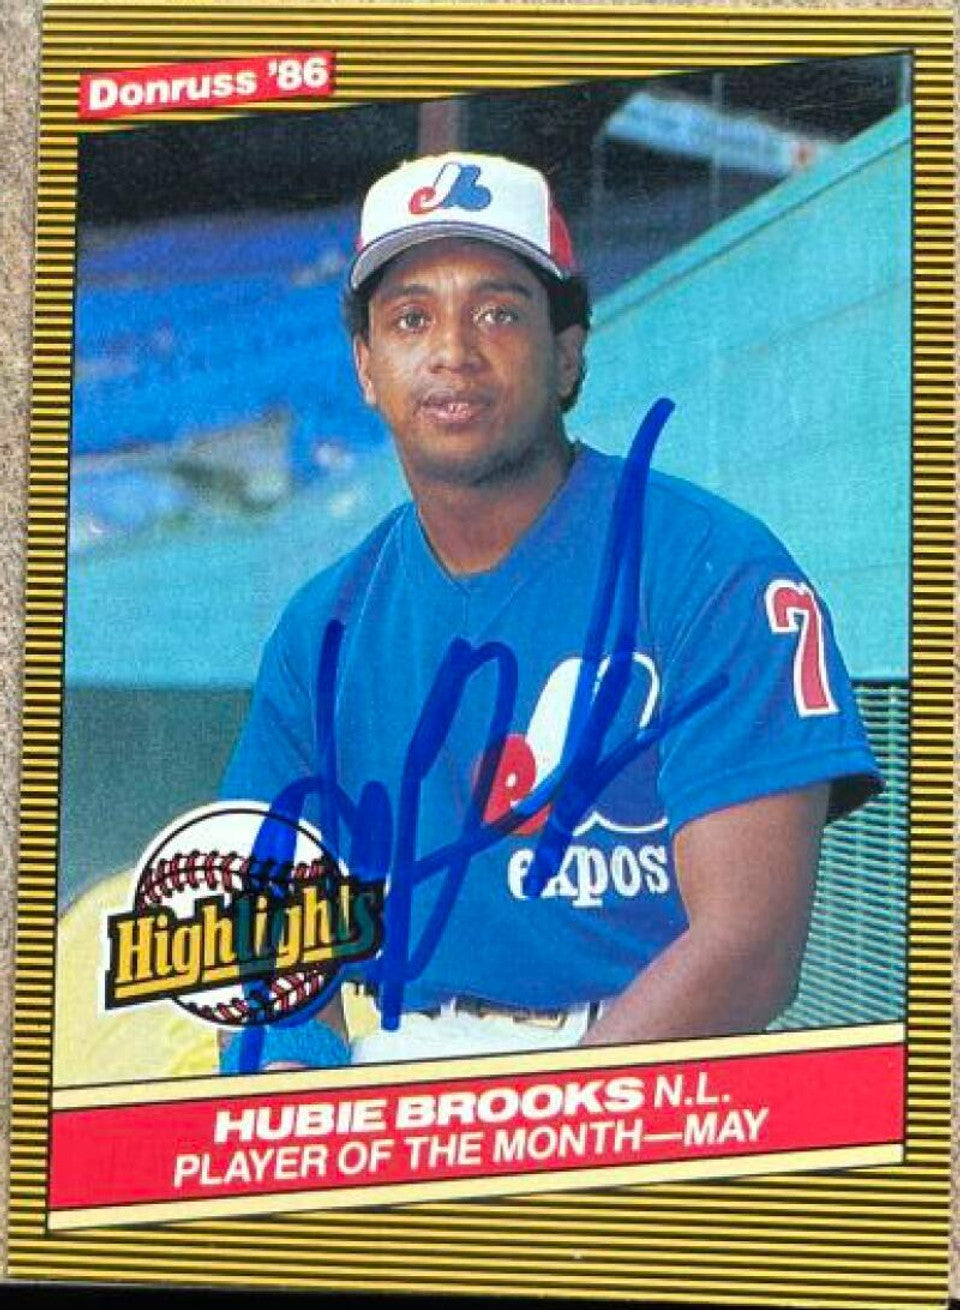 ヒュービー ブルックス サイン入り 1986 ドンラス ハイライト ベースボール カード - モントリオール エクスポズ